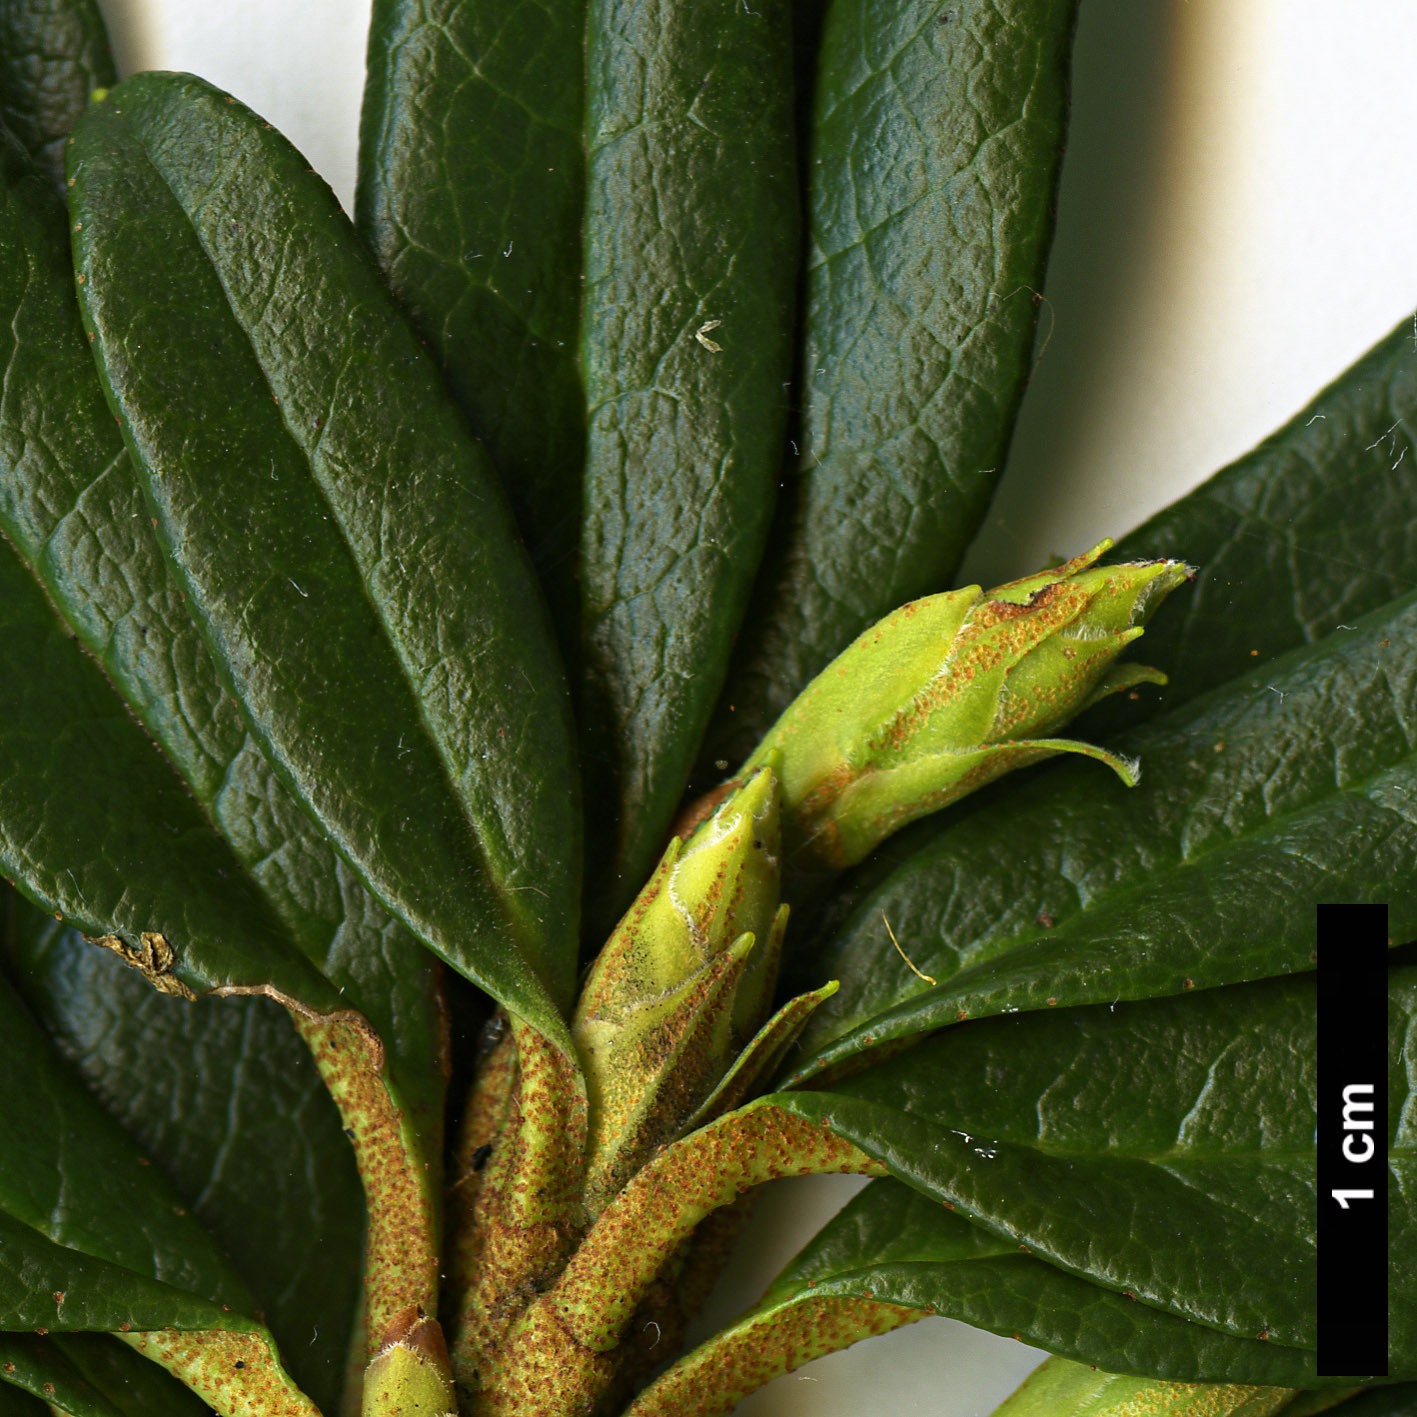 High resolution image: Family: Ericaceae - Genus: Rhododendron - Taxon: ferrugineum